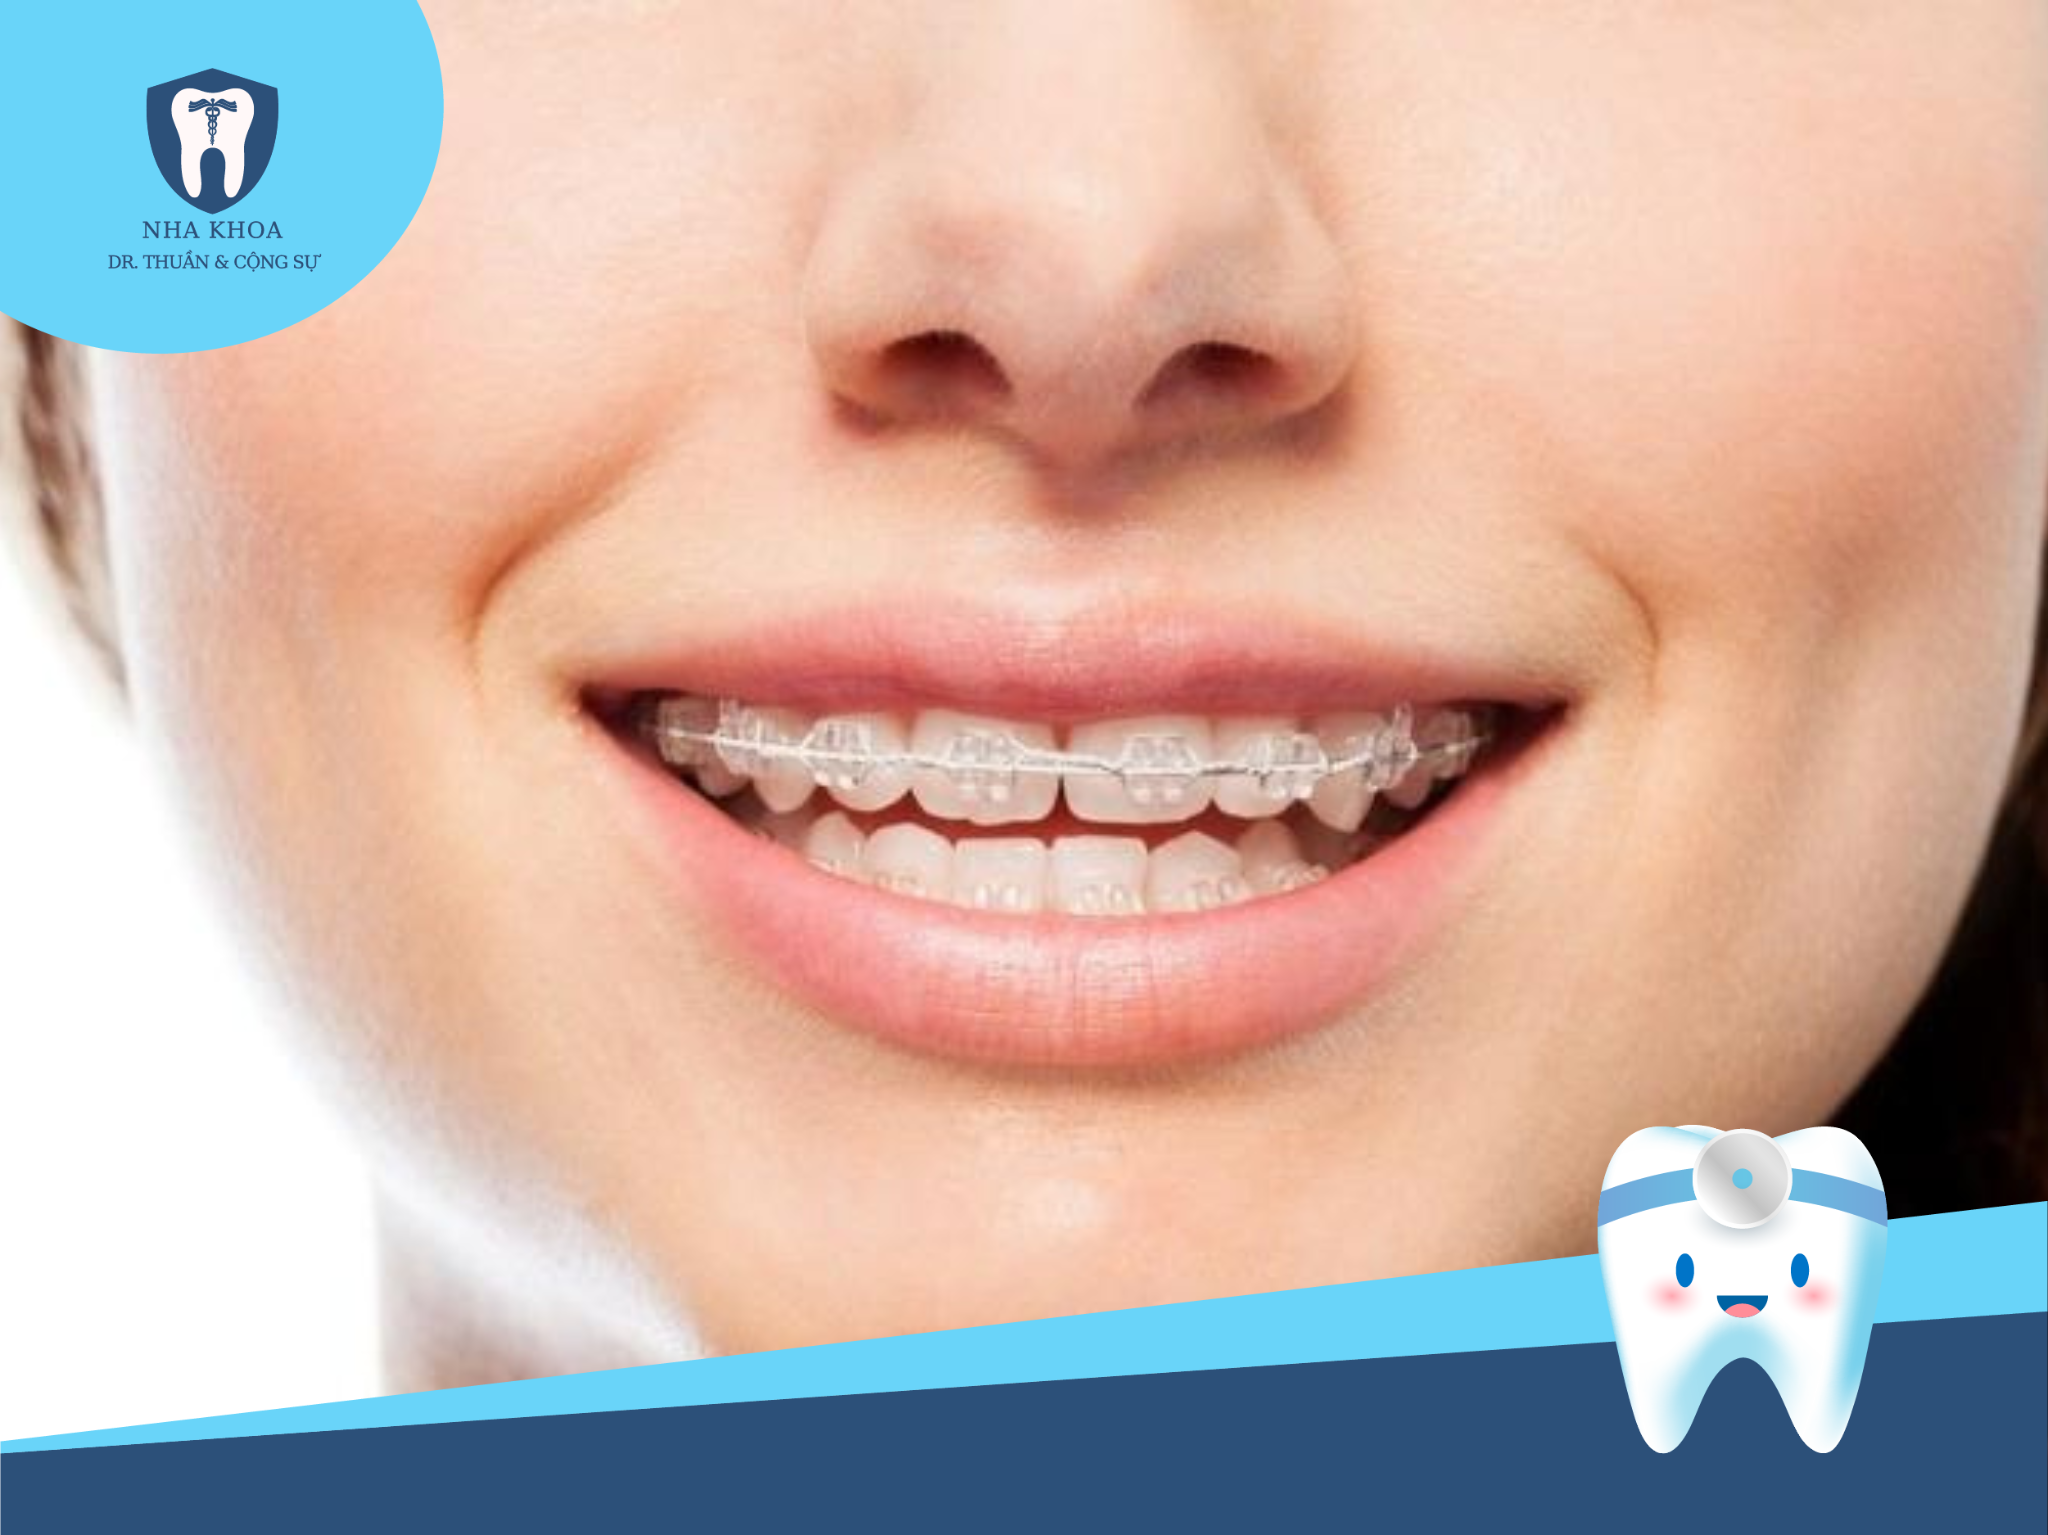 Niềng răng mắc cài sứ là một phương pháp điều trị chỉnh nha sử dụng mắc cài và dây cung để điều chỉnh vị trí của răng trên khuôn hàm.